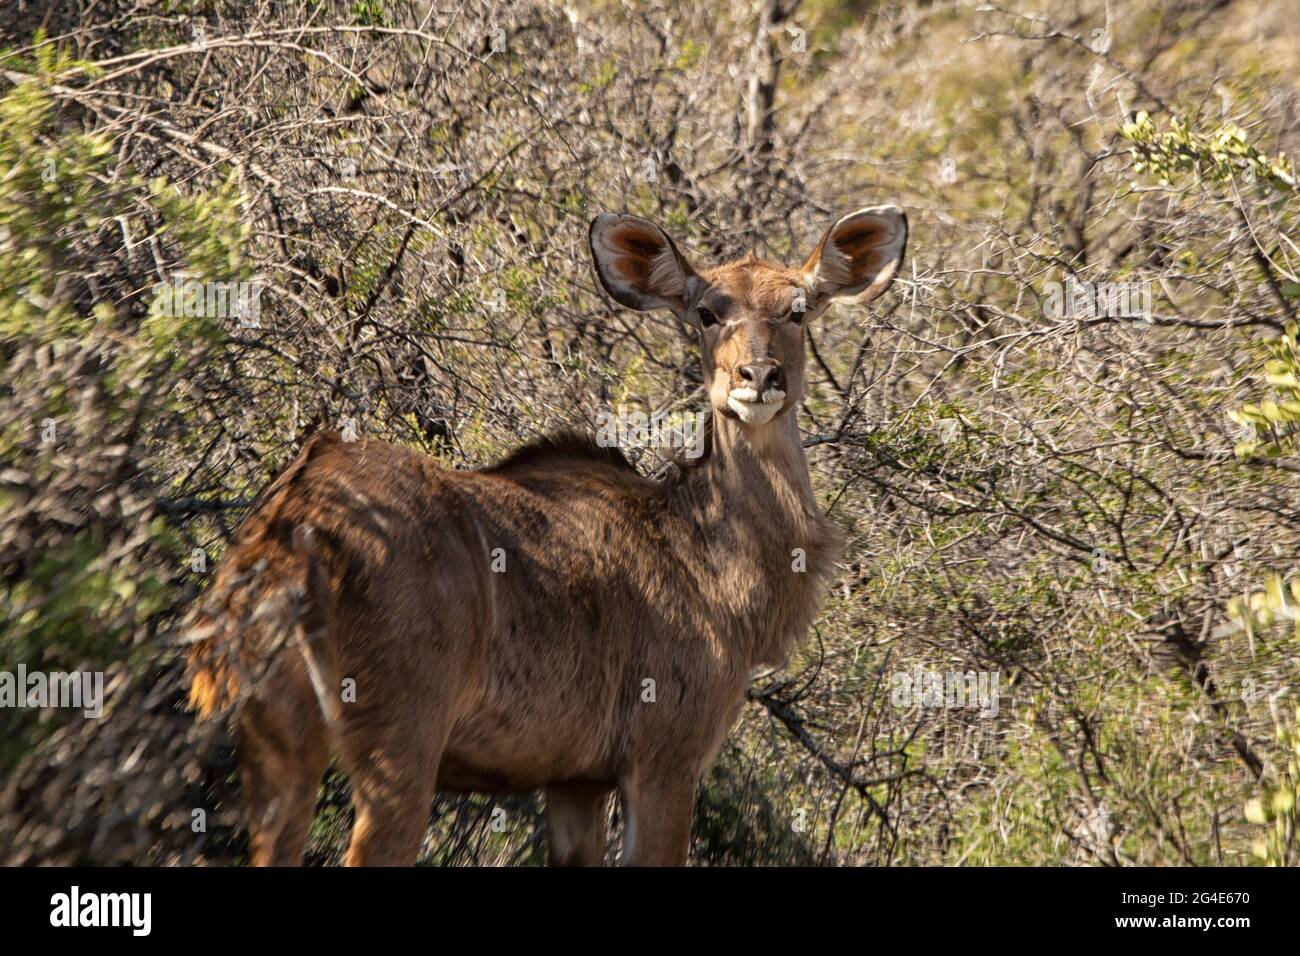 Greater Kudu (Tragelaphus strepsiceros), Western Cape, South Africa Stock Photo